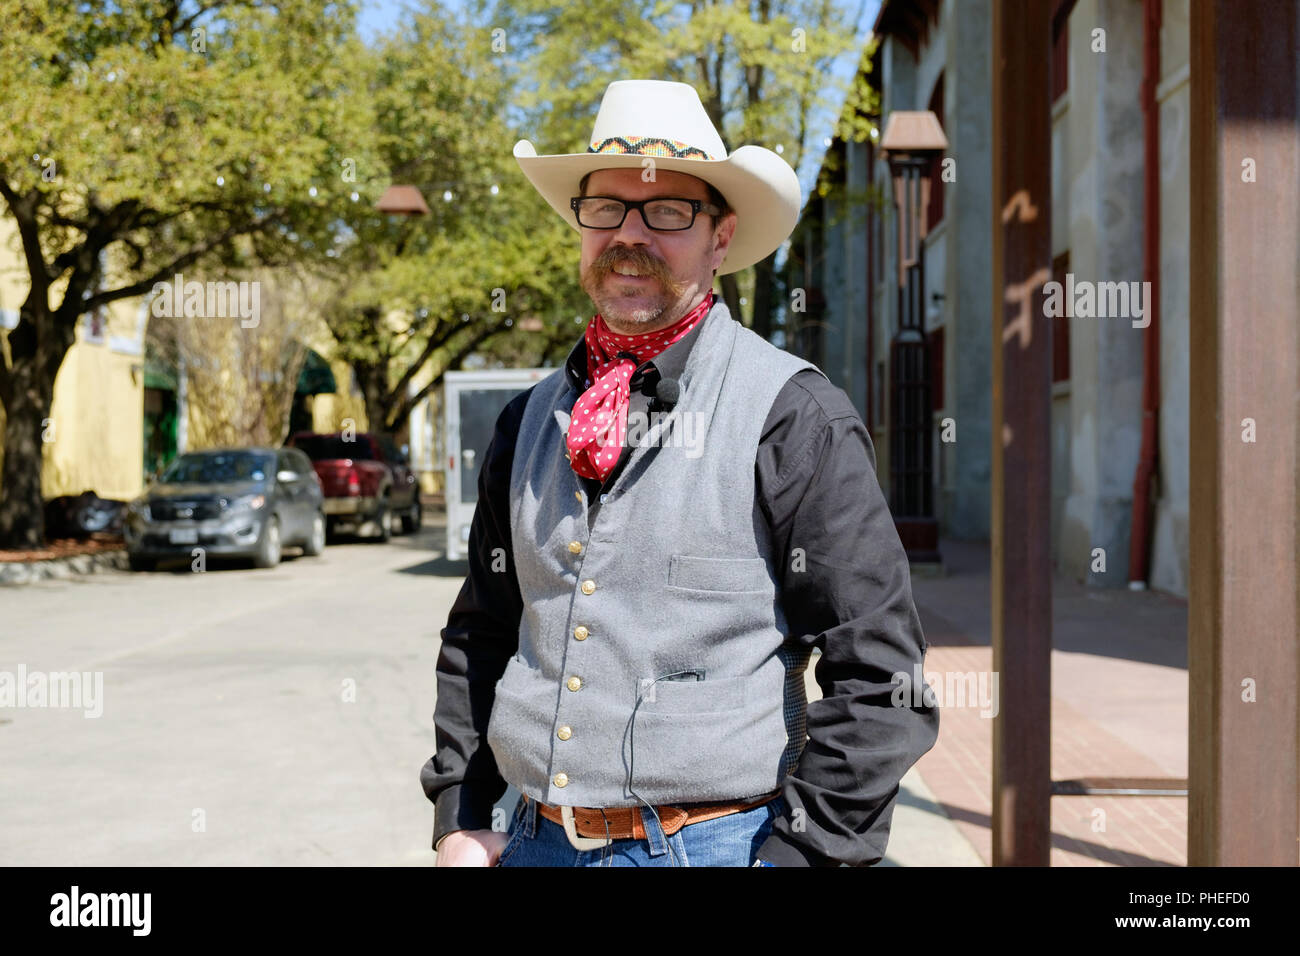 Un cowboy texan avec un foulard au cou rouge et blanc chapeau de cowboy cowboy et vêtements, se trouve à l'extérieur de Fort Worth Stockyards, Texas. L'horizontale. Banque D'Images